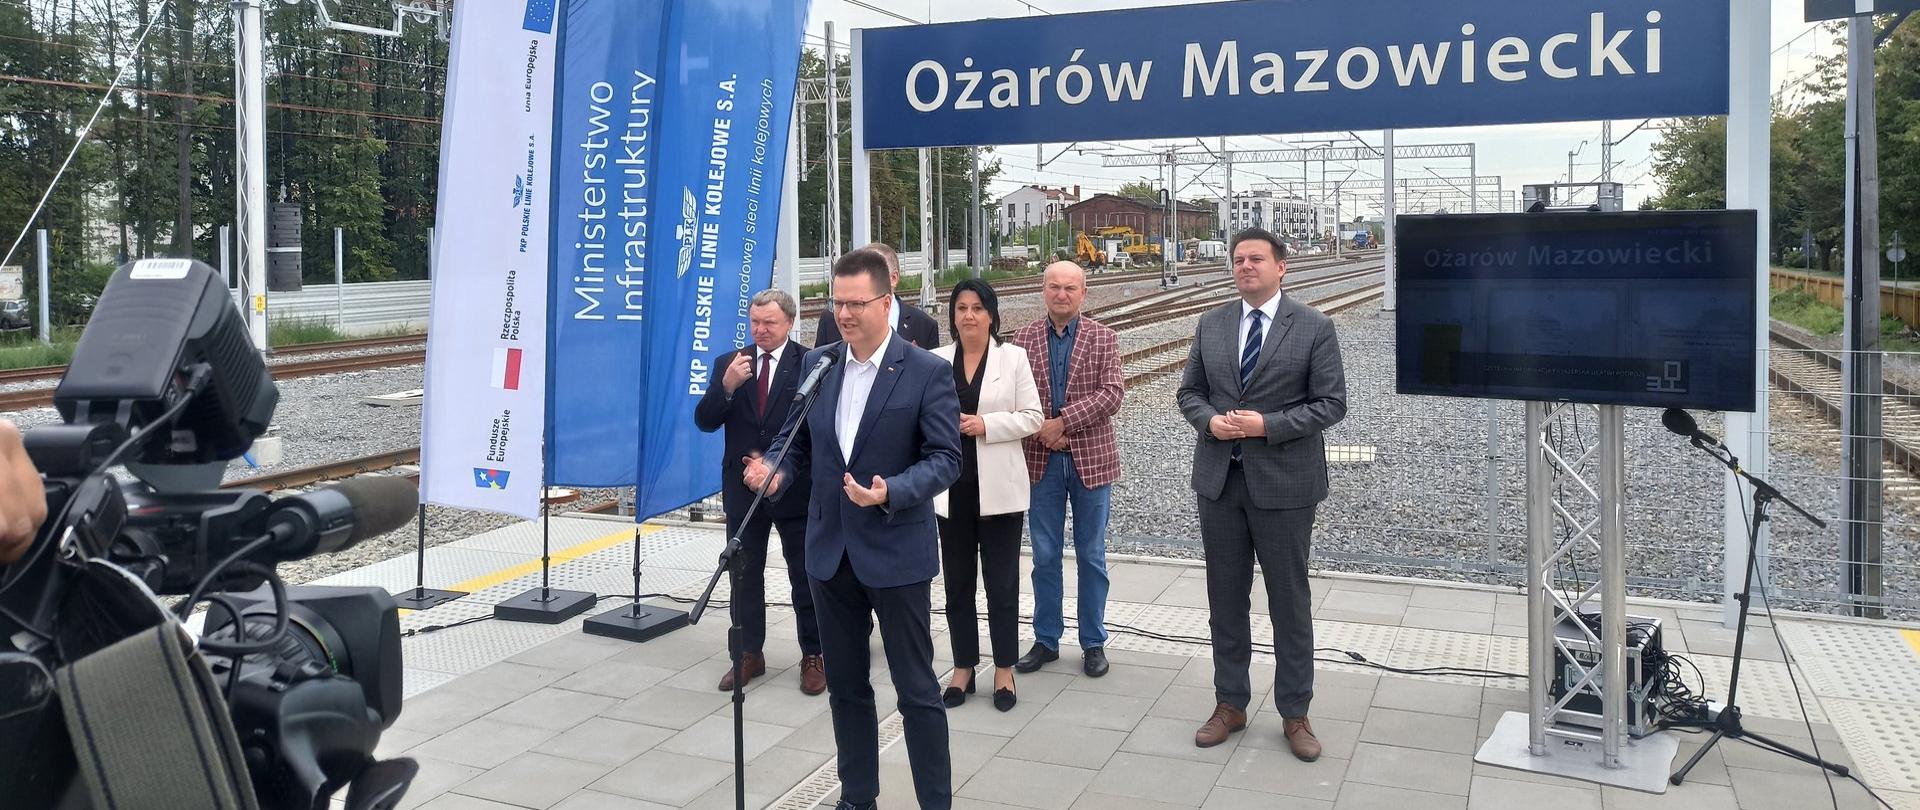 Wiceminister infrastruktury Andrzej Bittel w trakcie konferencji prasowej na stacji kolejowej w Ożarowie Mazowieckim